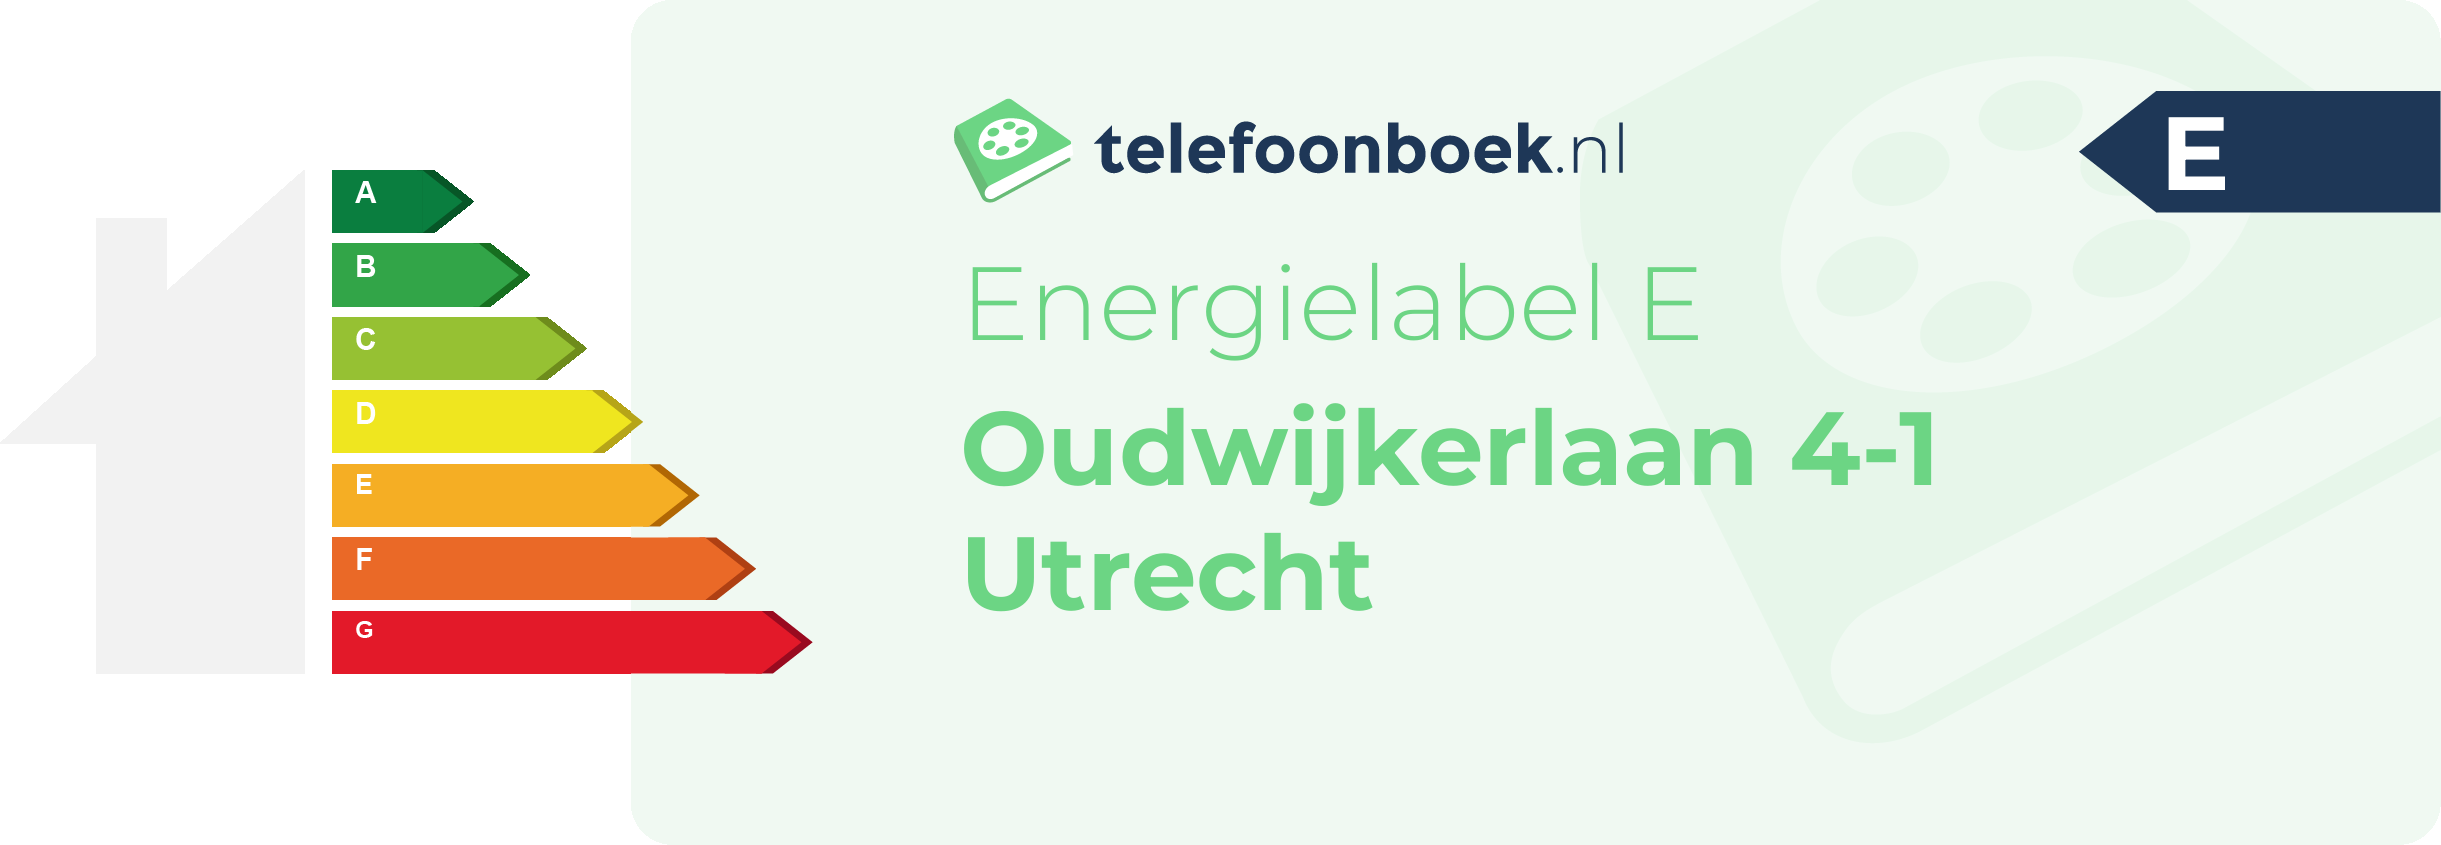 Energielabel Oudwijkerlaan 4-1 Utrecht